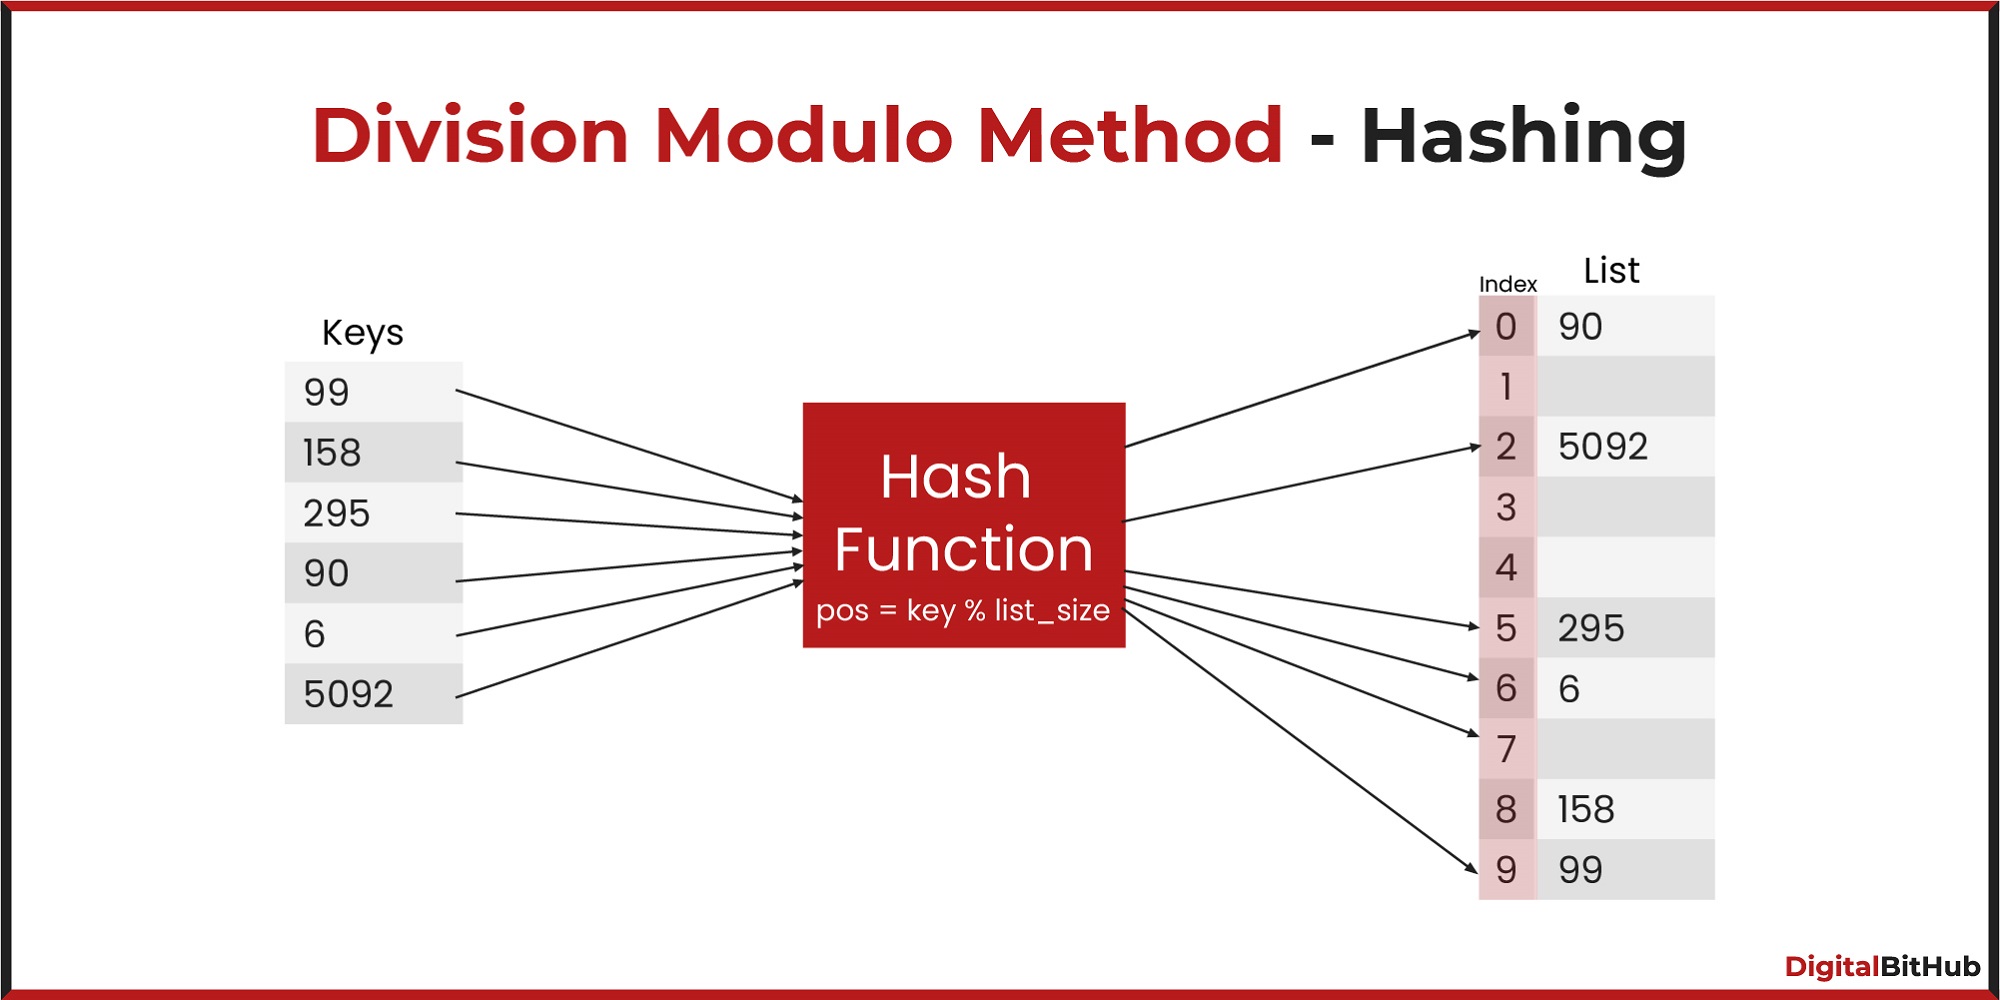 Division Modulo Method - Hashing Technique